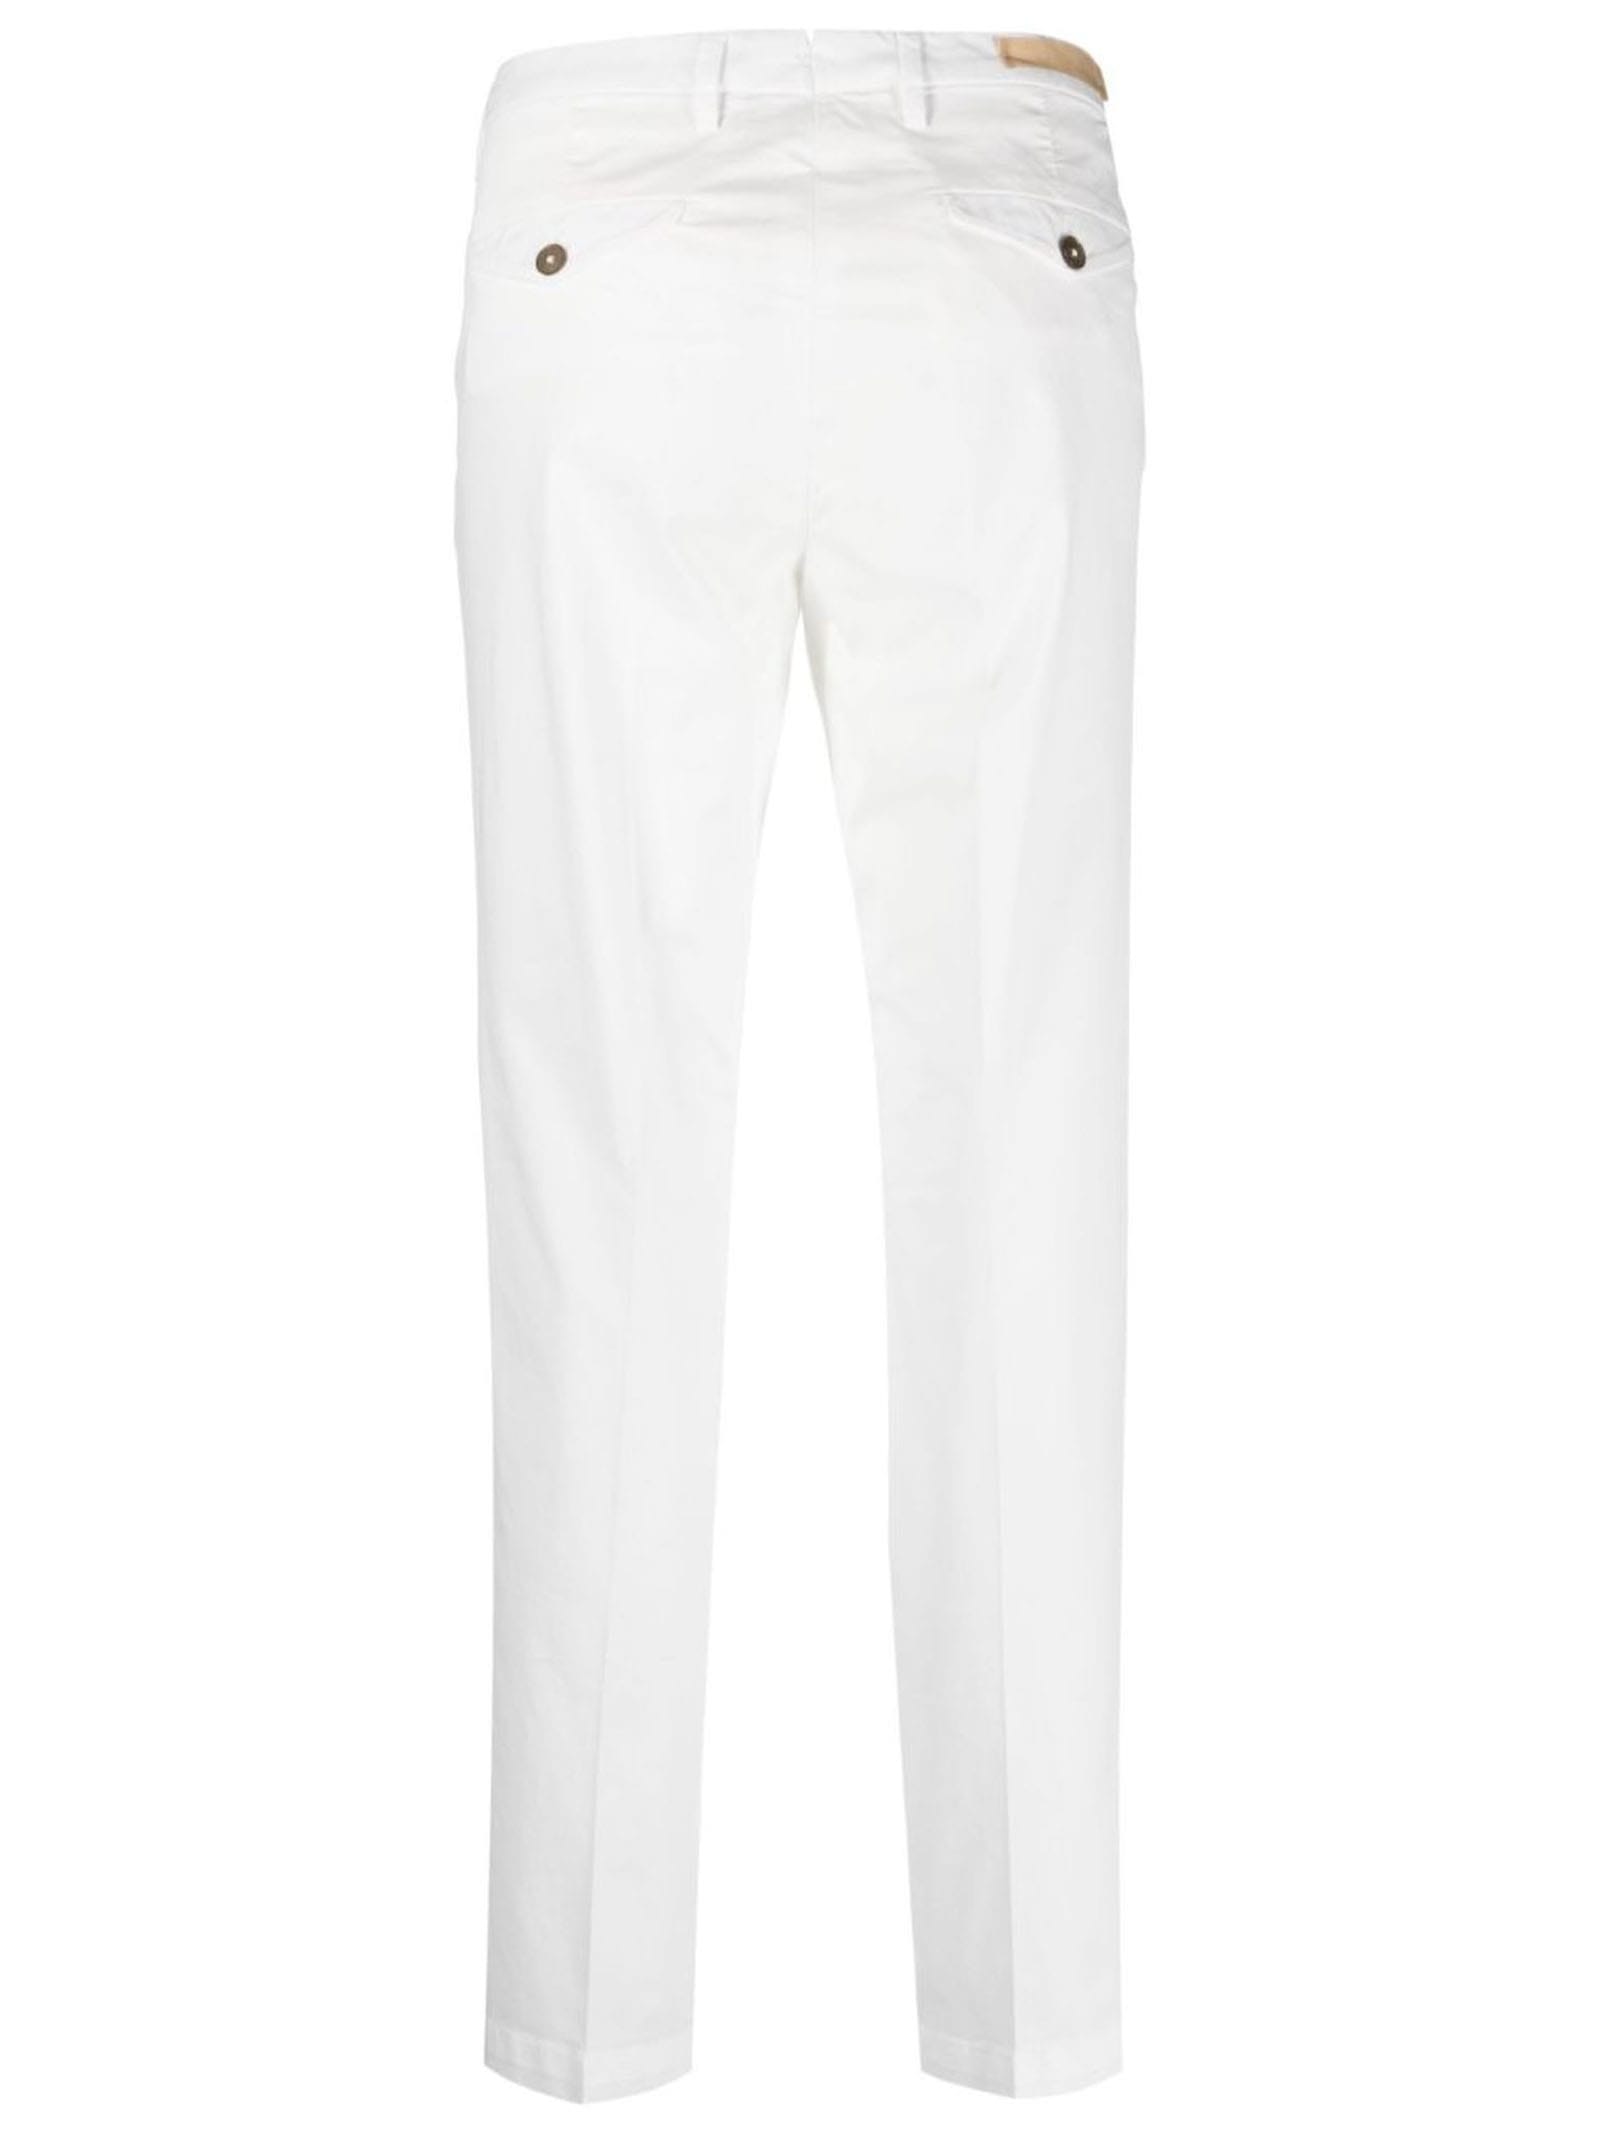 Shop Briglia 1949 White Cotton Trousers